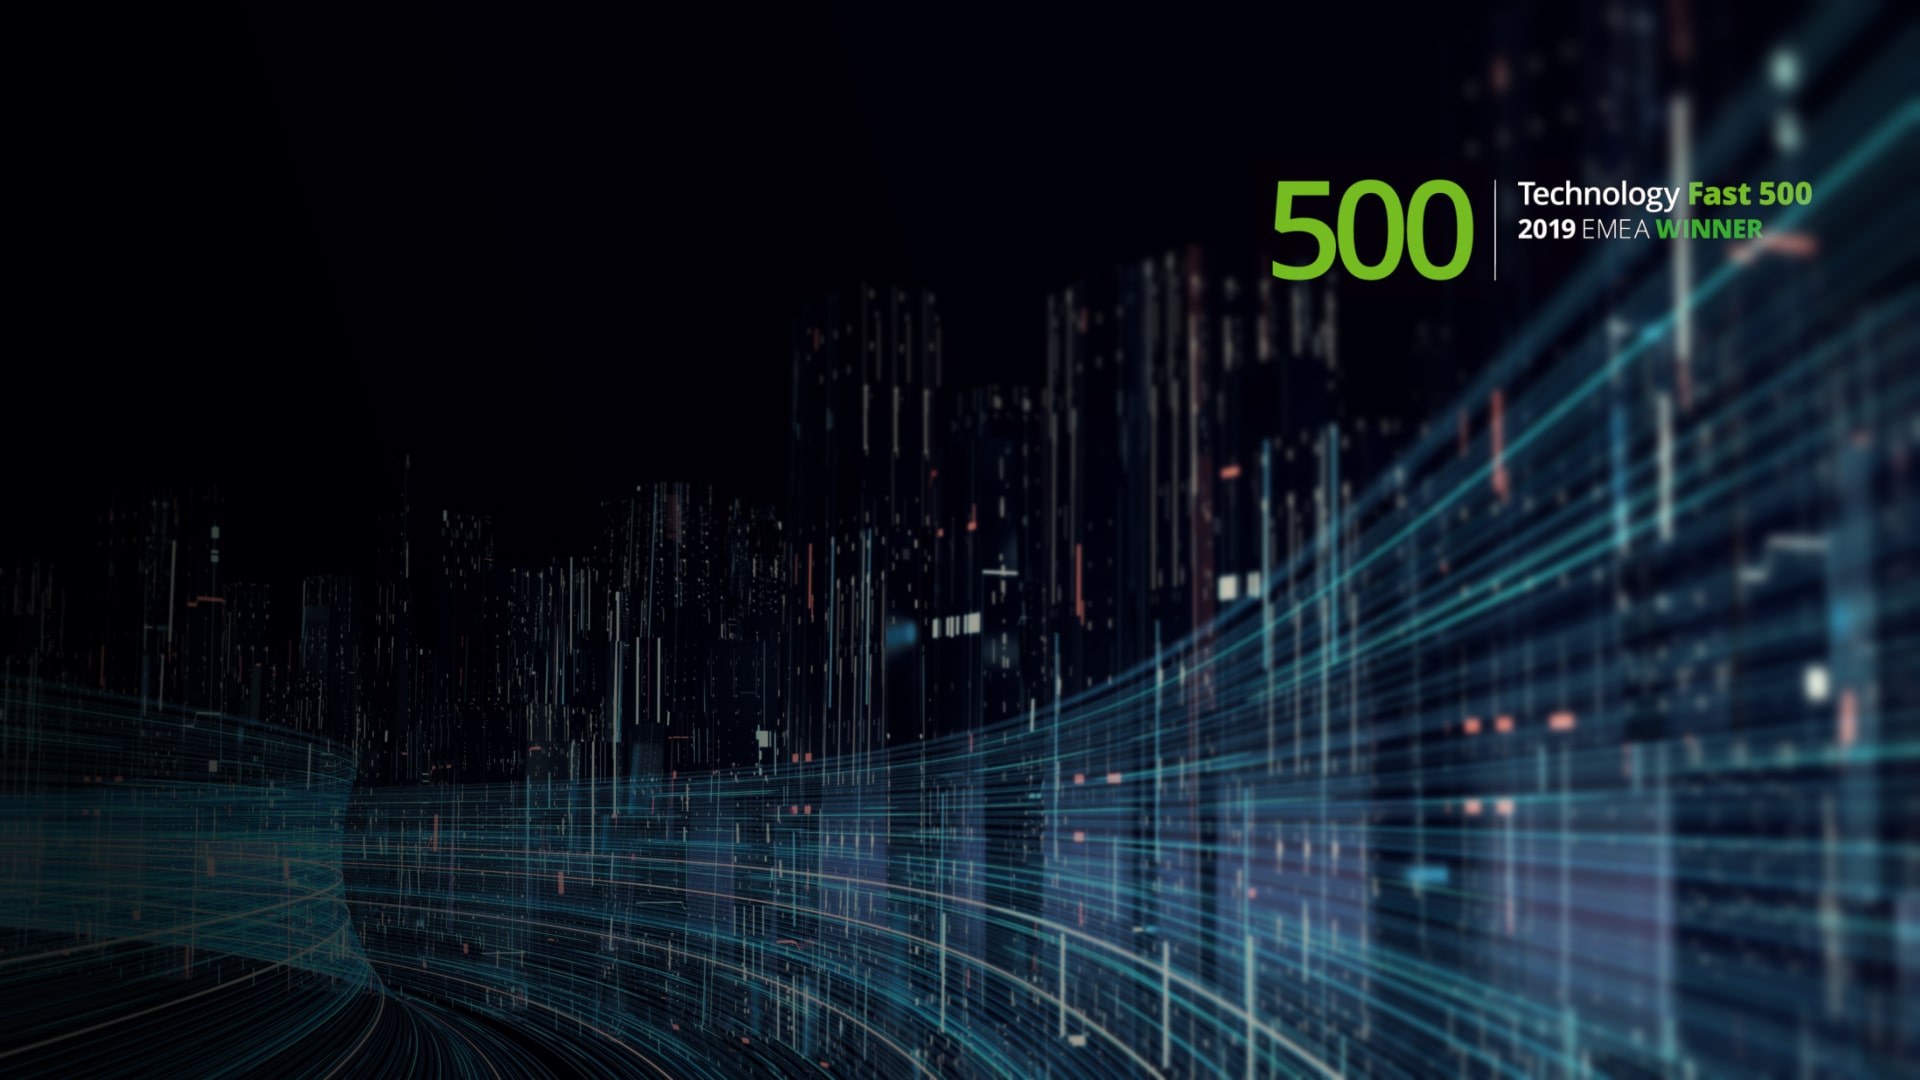 Tremend is the fastest-growing Romanian company in Deloitte Technology Fast 500 EMEA ranking